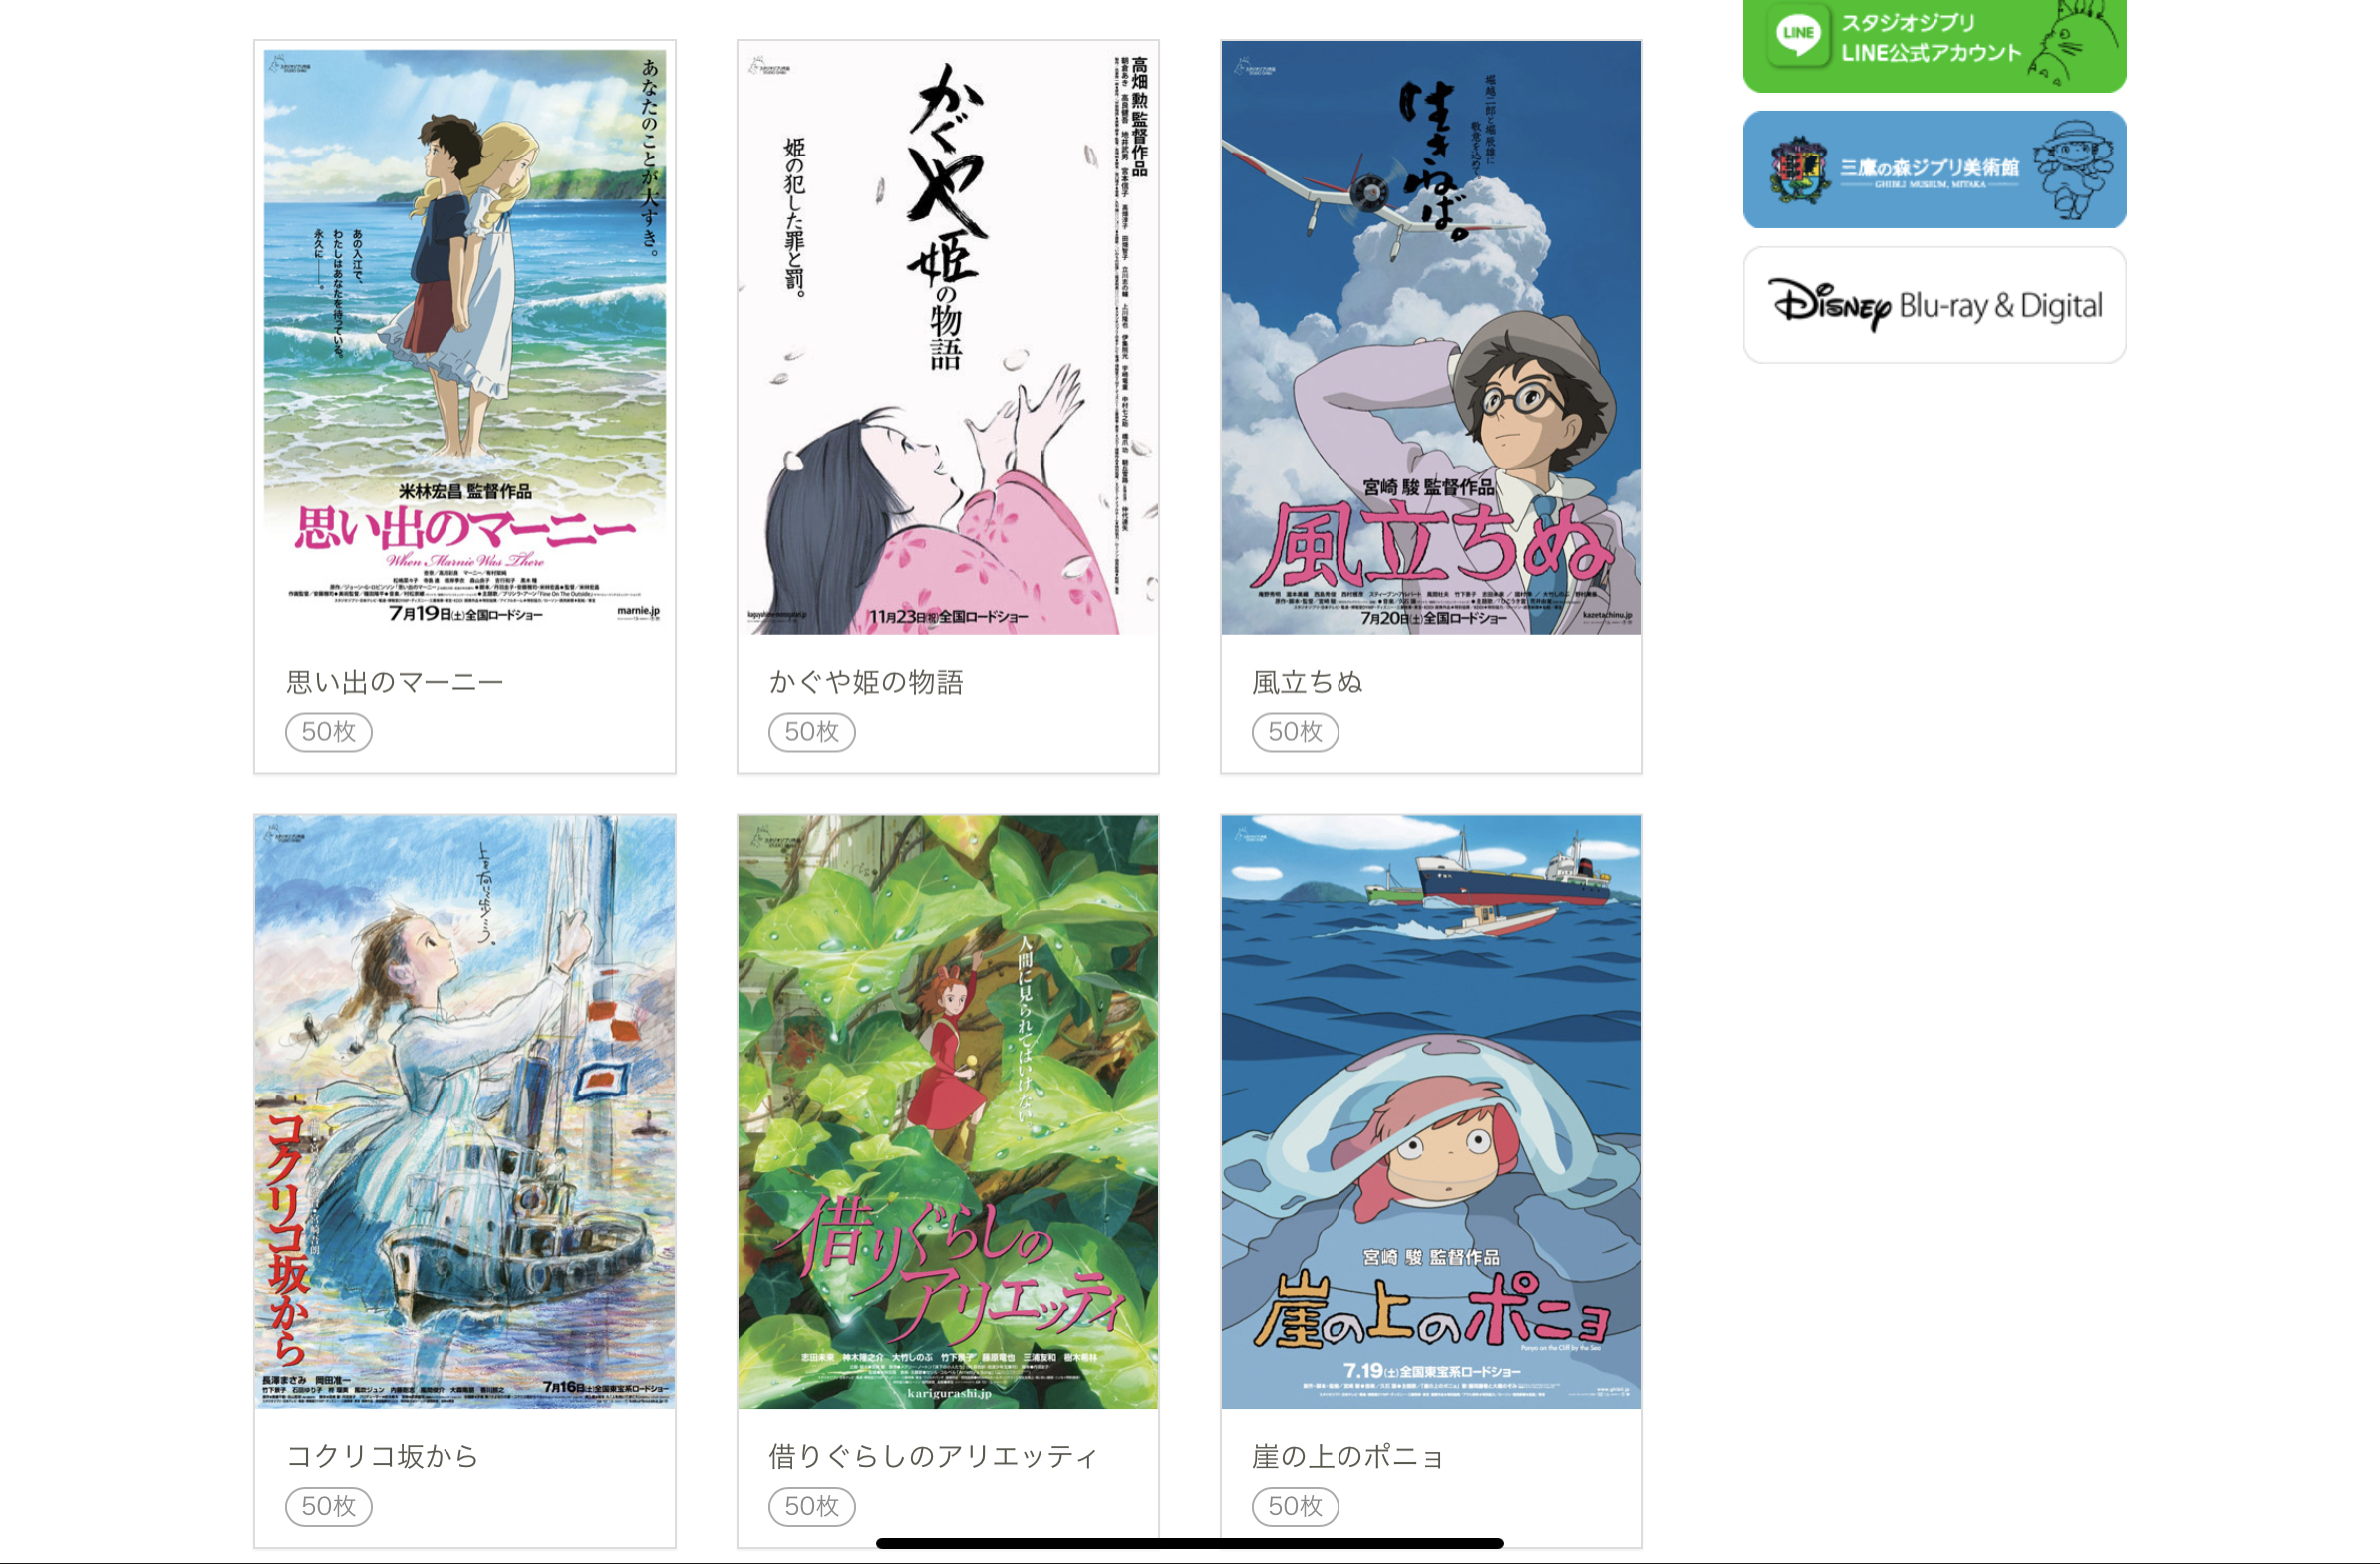 Studio Ghibli comparte un arte oficial personalizable para que los fans  envíen sus mensajes más importantes